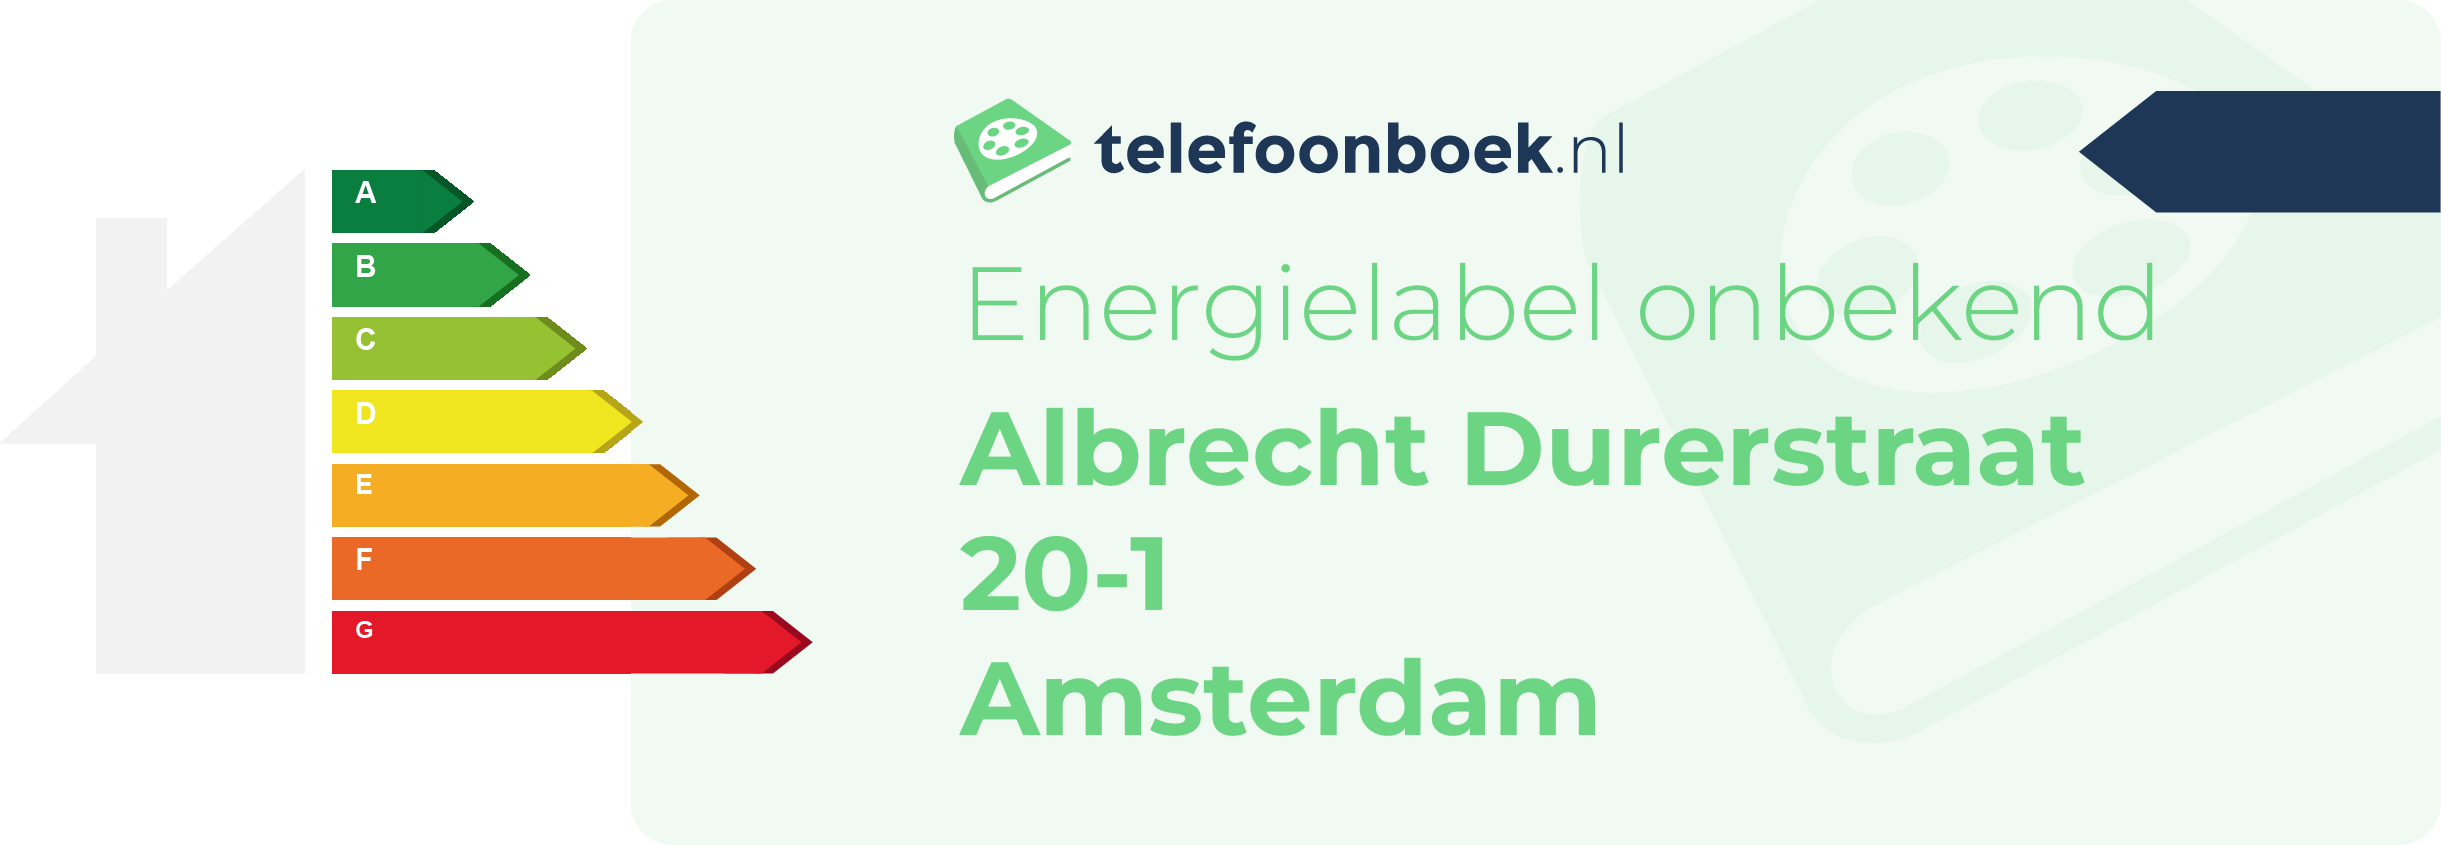 Energielabel Albrecht Durerstraat 20-1 Amsterdam